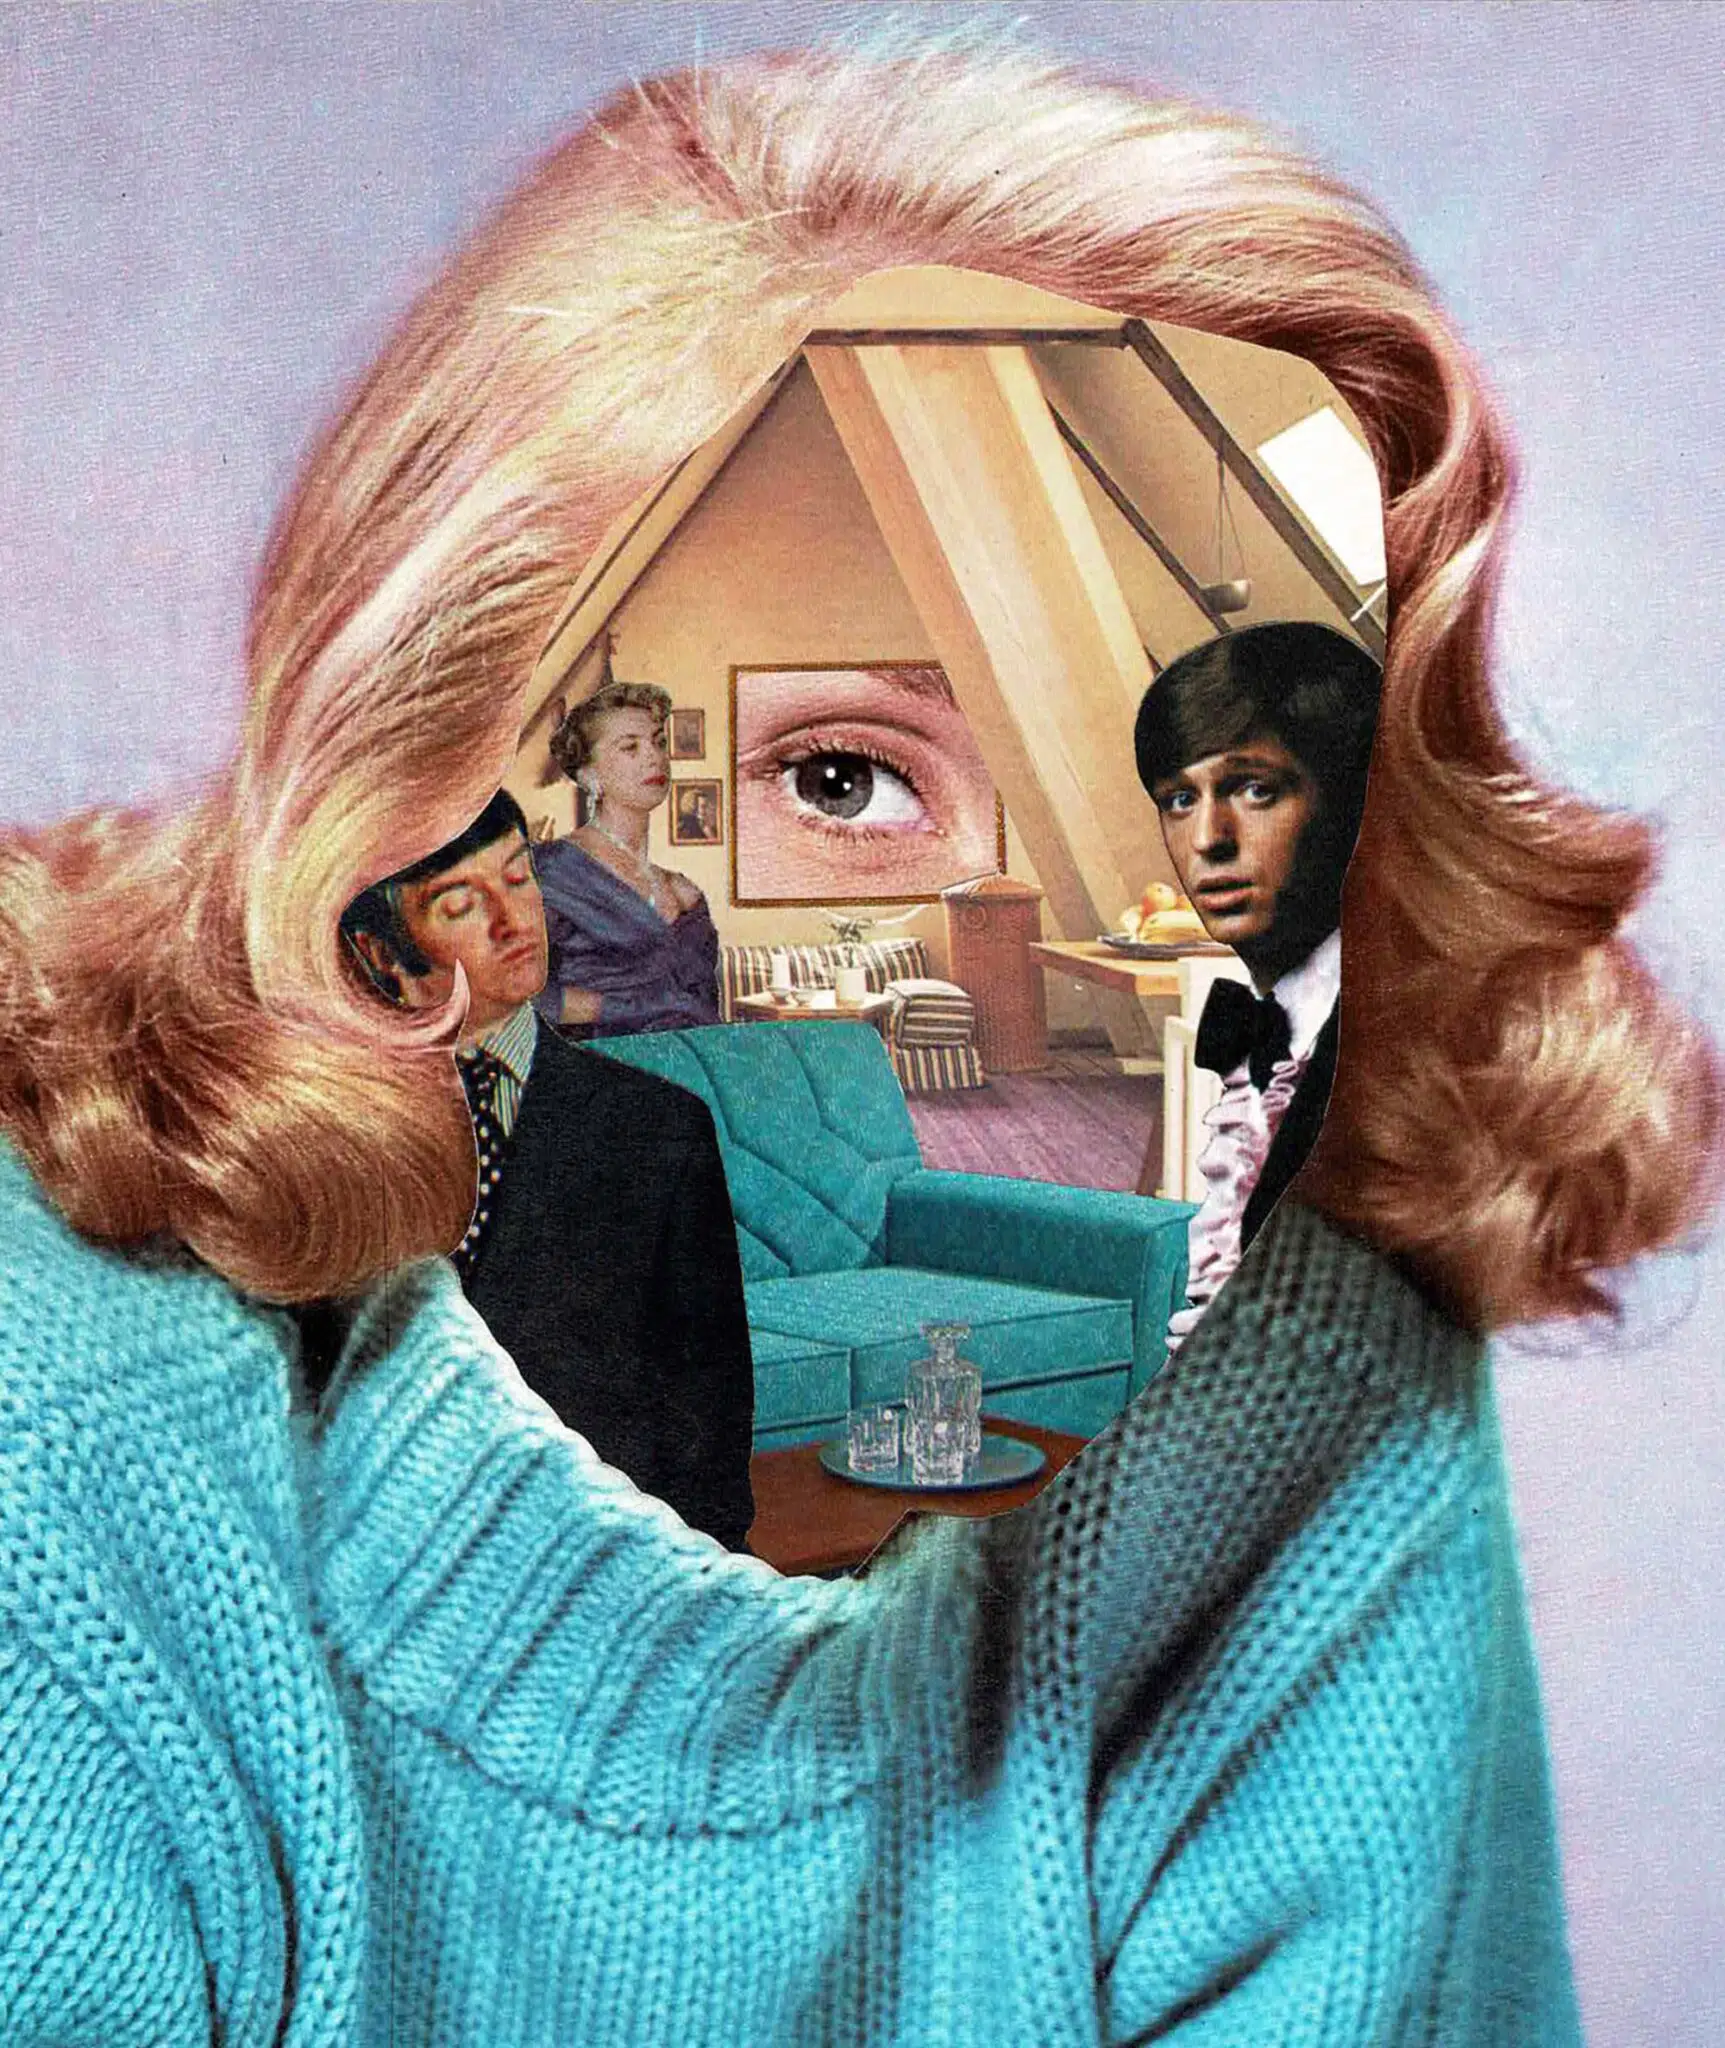 wheatcroft collage vintage rostro mujer retro ojo y personas en su cara